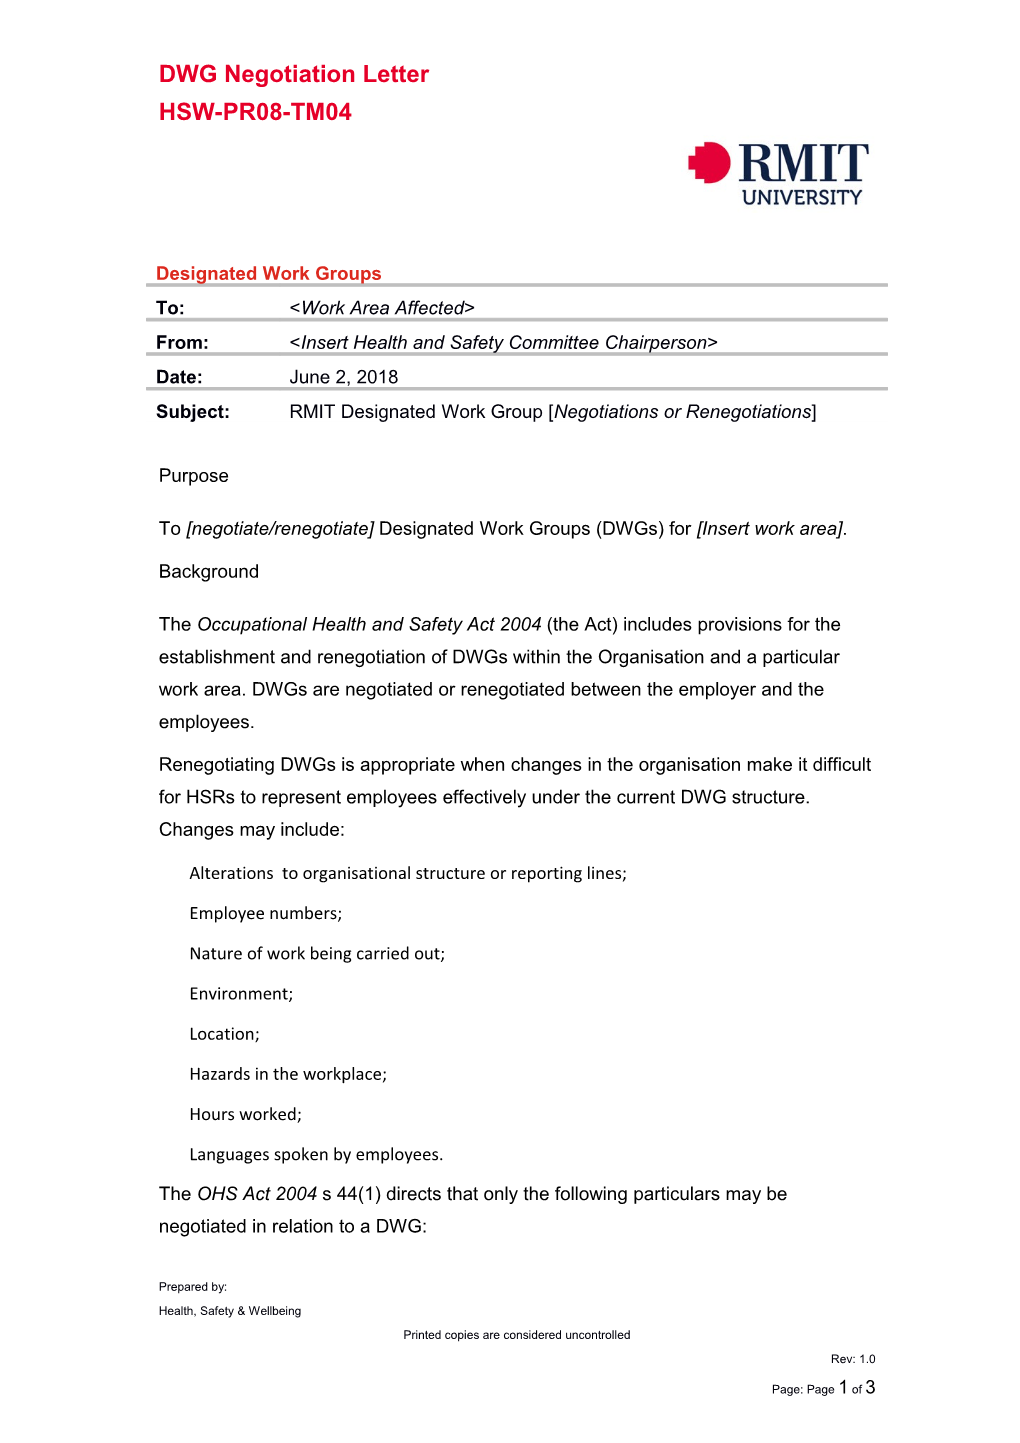 HSW-PR08-TM04 - DWG Negotiation Letter - Rev. 1.0